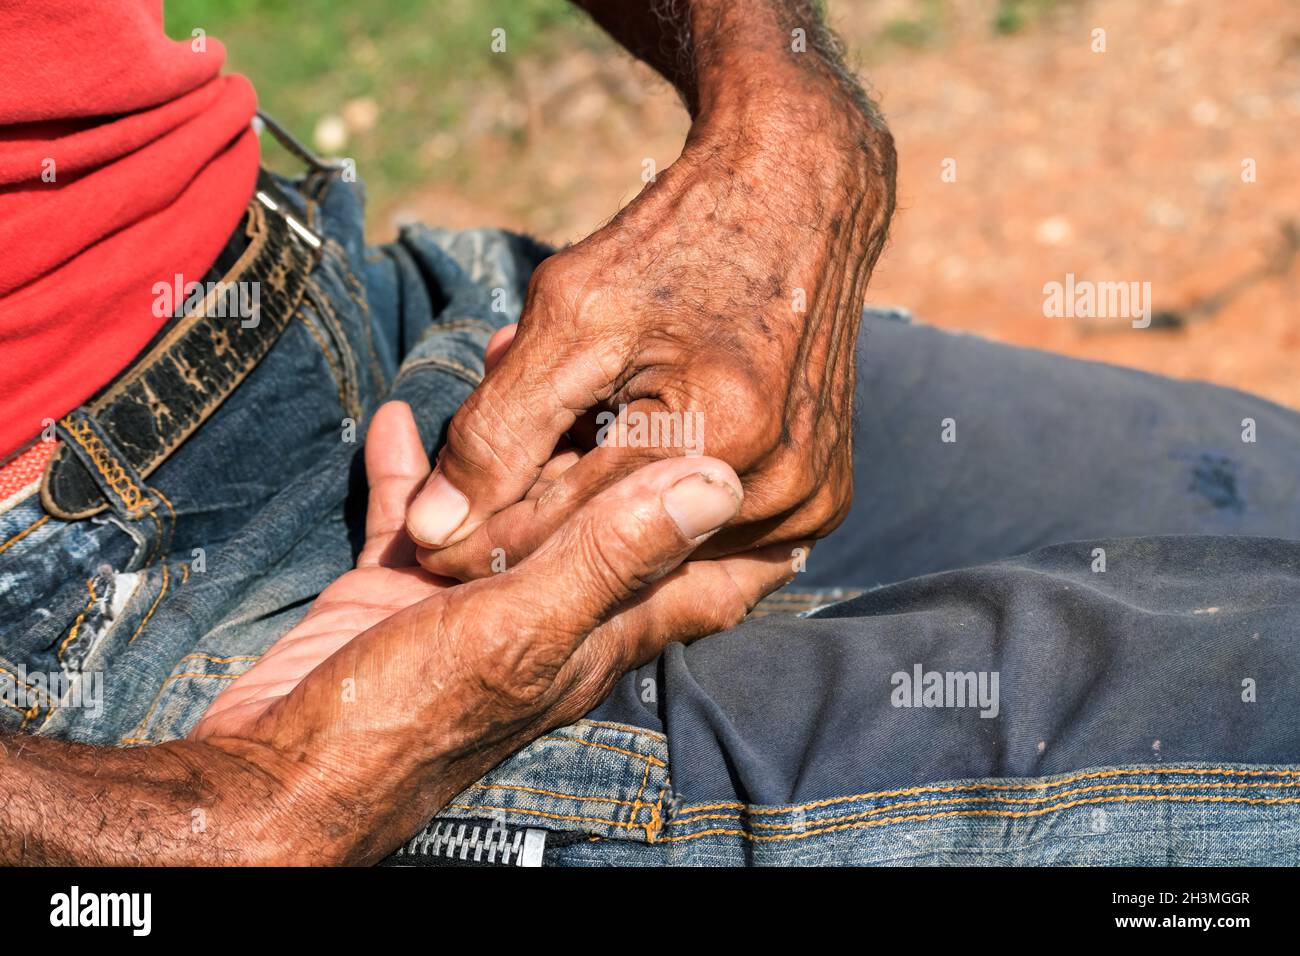 Nahaufnahme beider Hände eines älteren Mannes mit dunkler Haut, eine Hand befindet sich in der anderen, beide Hände auf seinem Schoß. Er hat eine kaltblütige Haut. Stockfoto